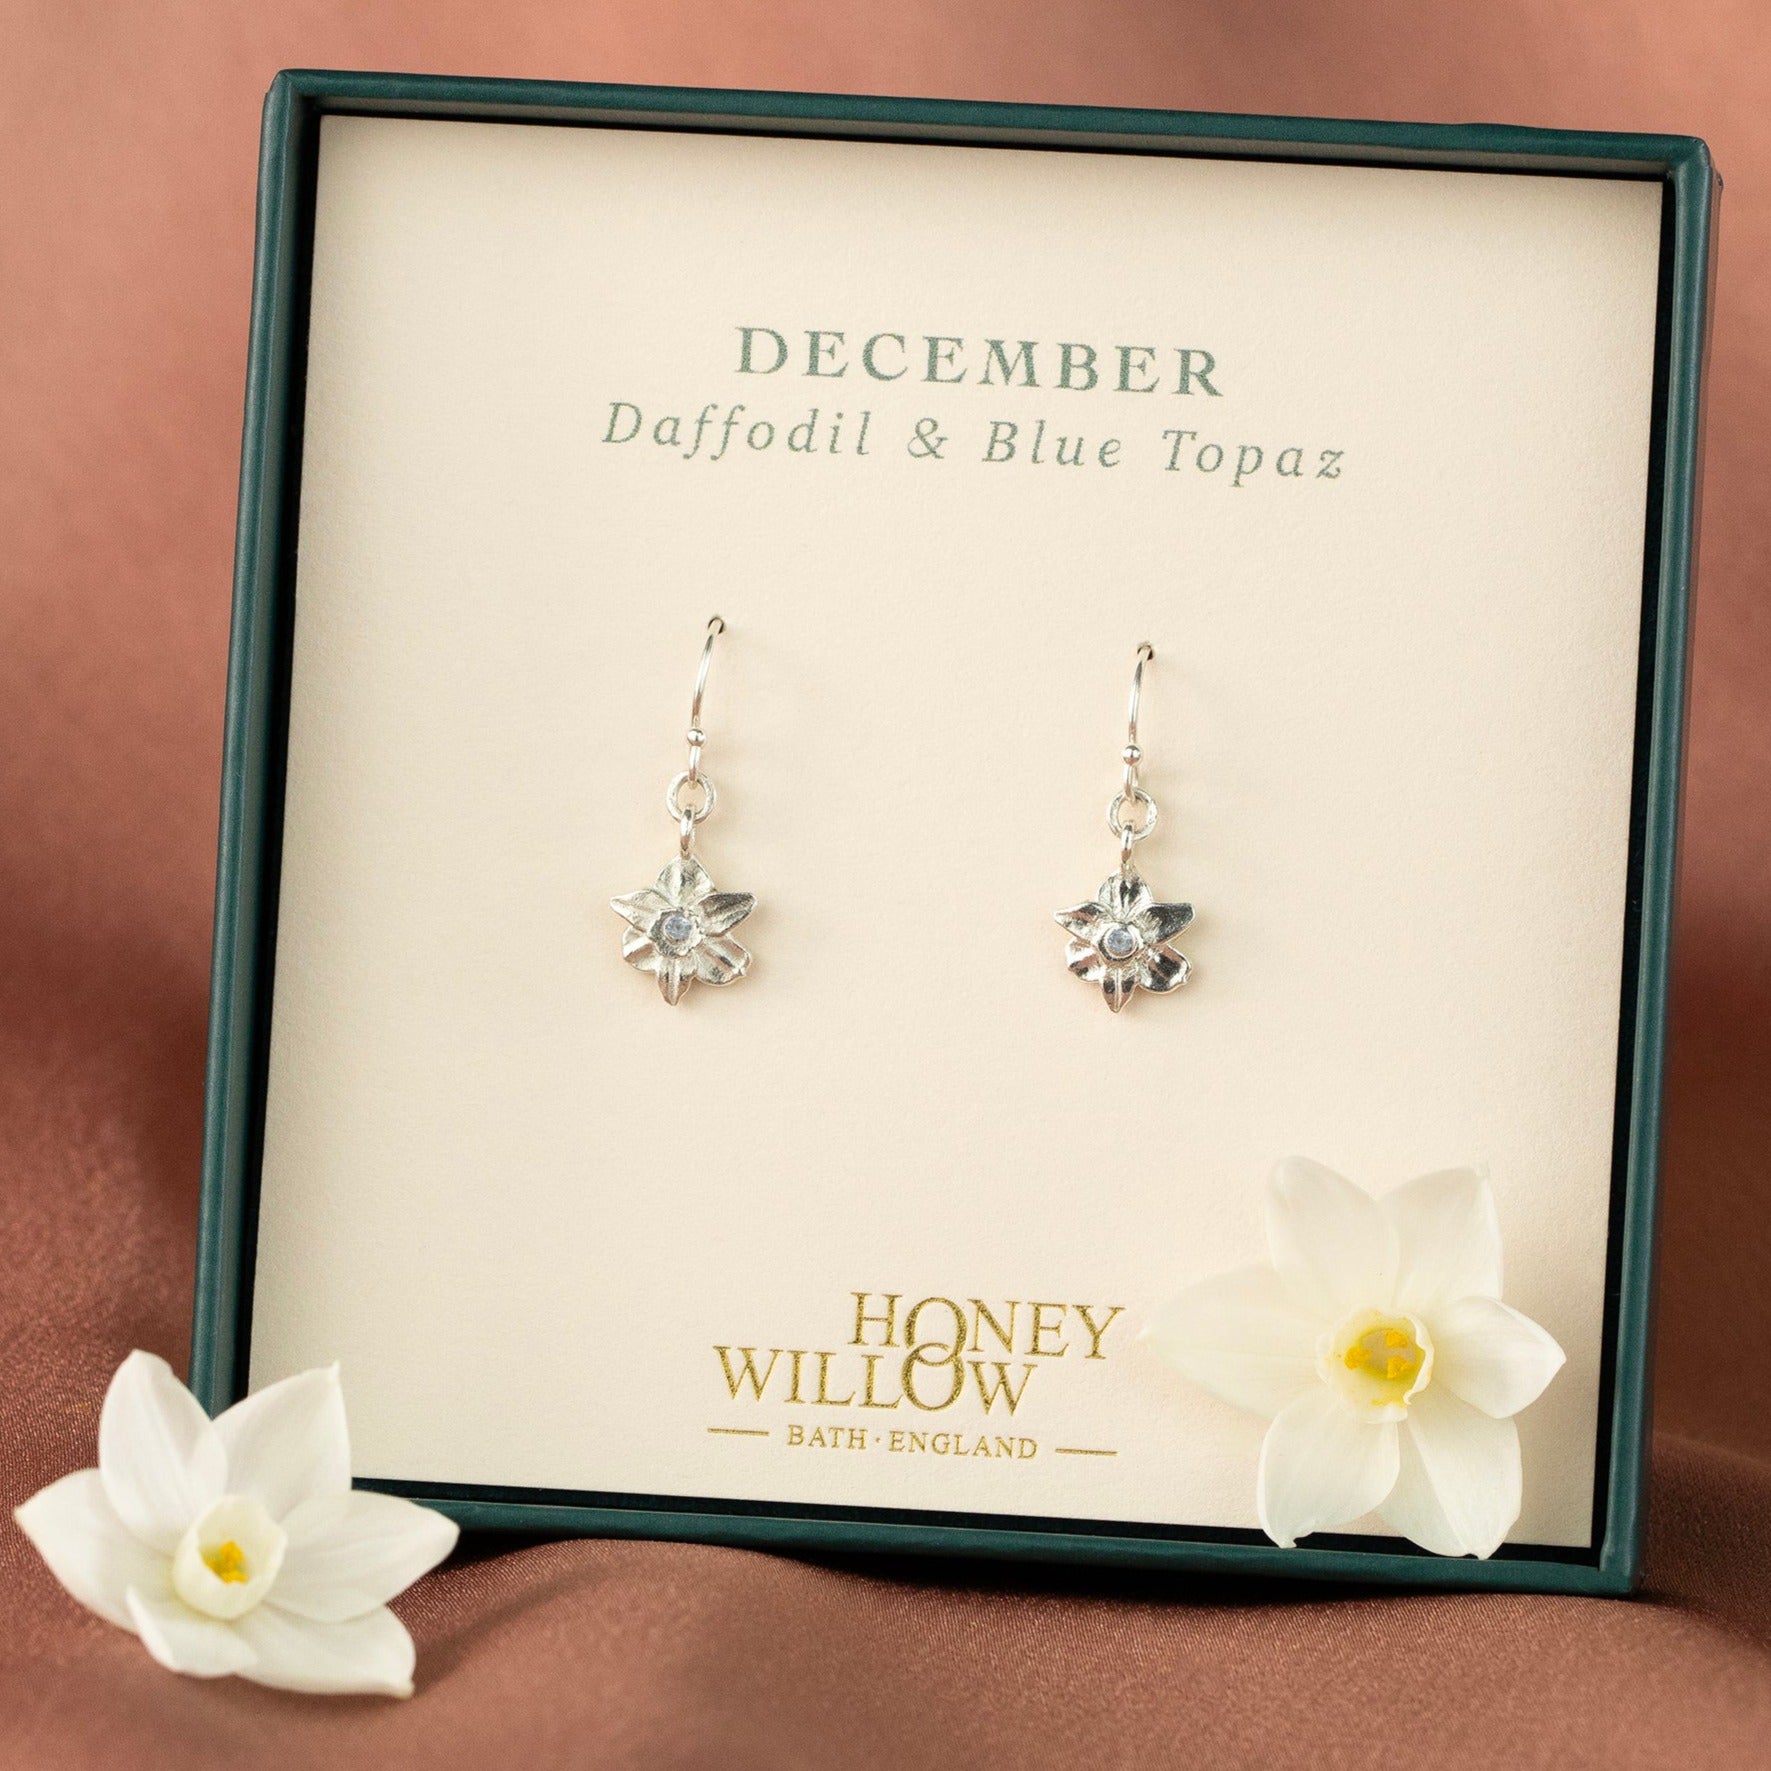 December Birth Flower & Birthstone Earrings - Daffodil & Blue Topaz - Silver